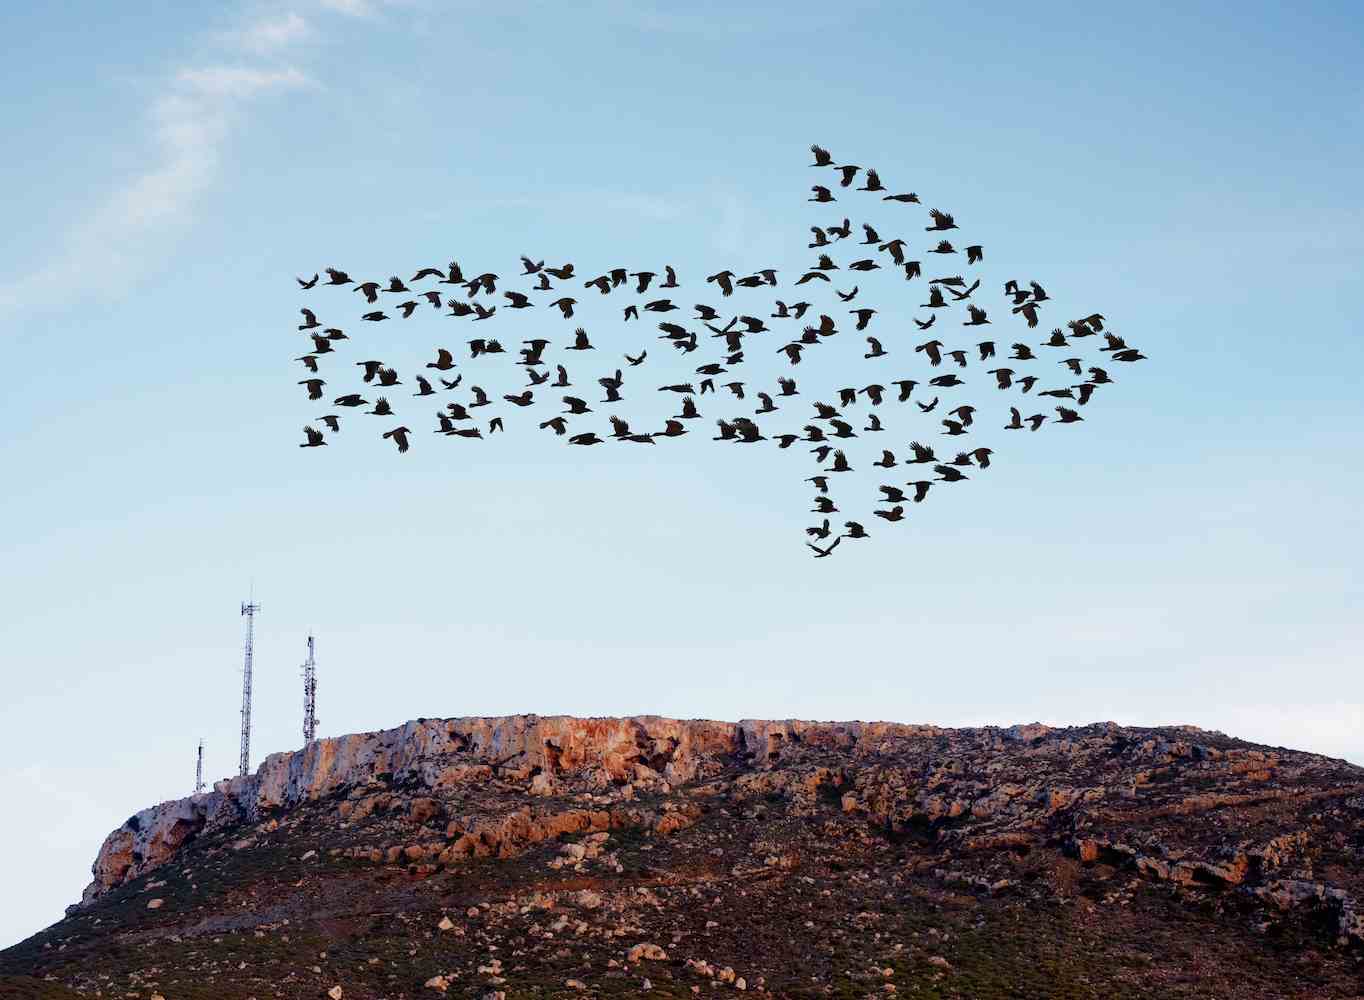 Vogelschwarm, der in Pfeilformation über einem Hügel mit einigen Kommunikations- und Handymasten fliegt.